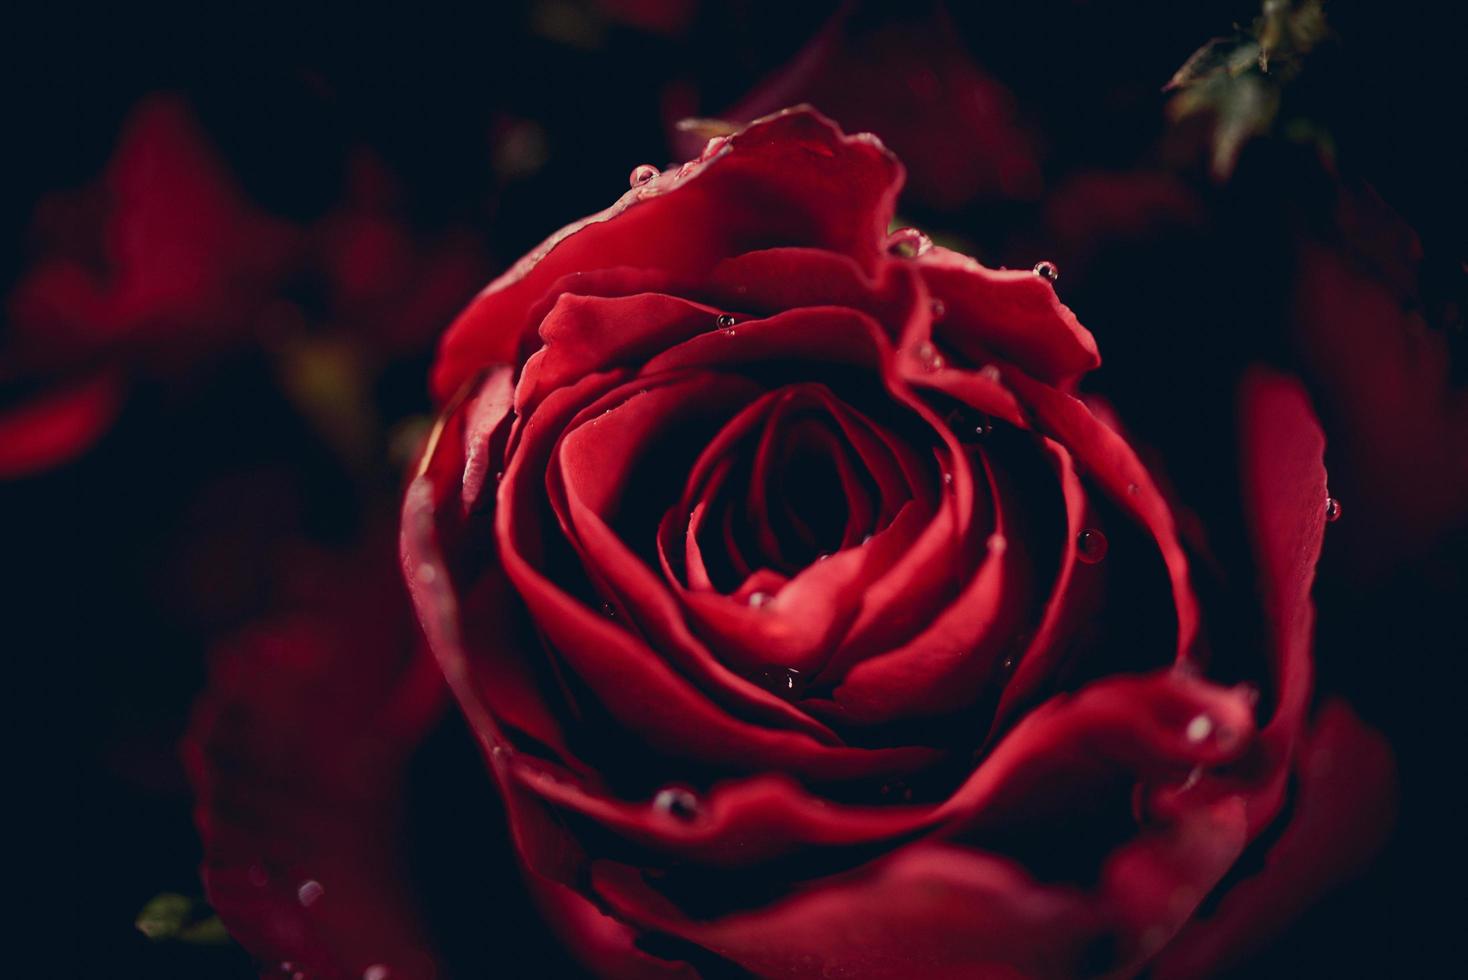 rode rozen bloemboeket op donkere achtergrond close-up verse natuurlijke roos achtergrond bloemen romantische liefde valentijn dag foto